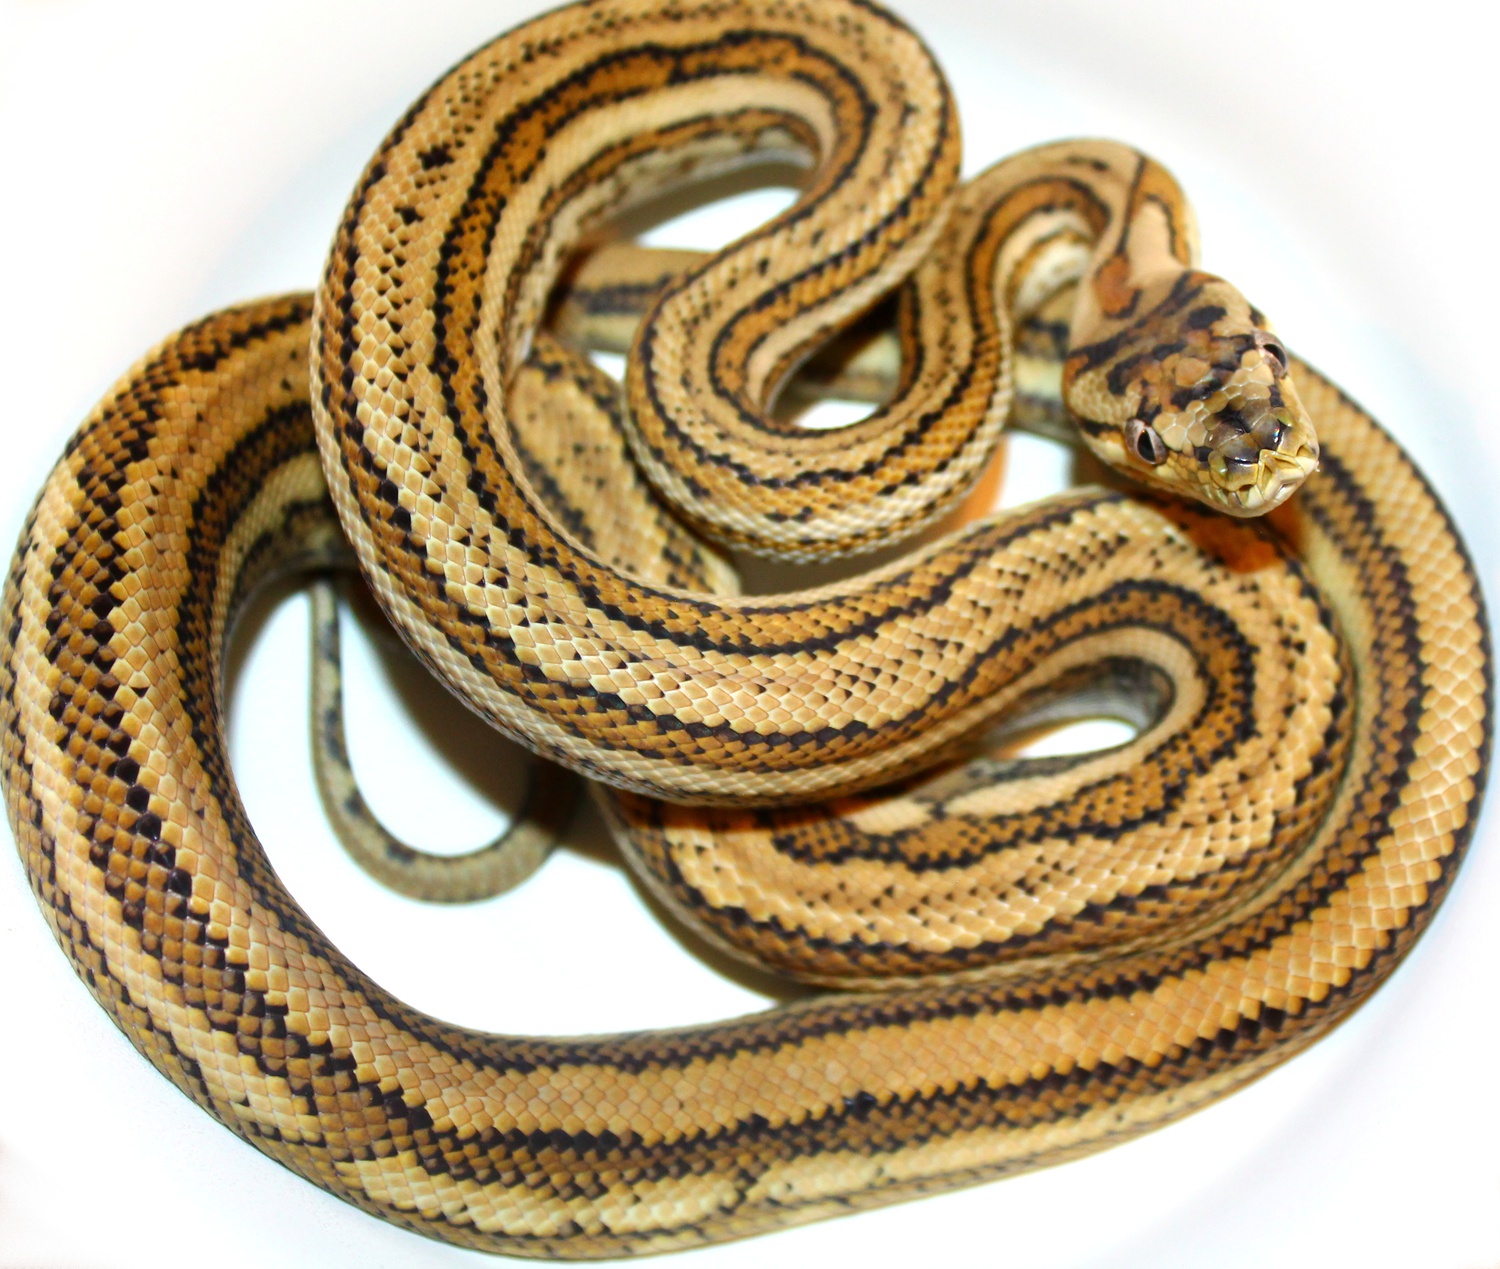 True Hypo Tiger Coastals Coastal Carpet Python by Inland Reptile